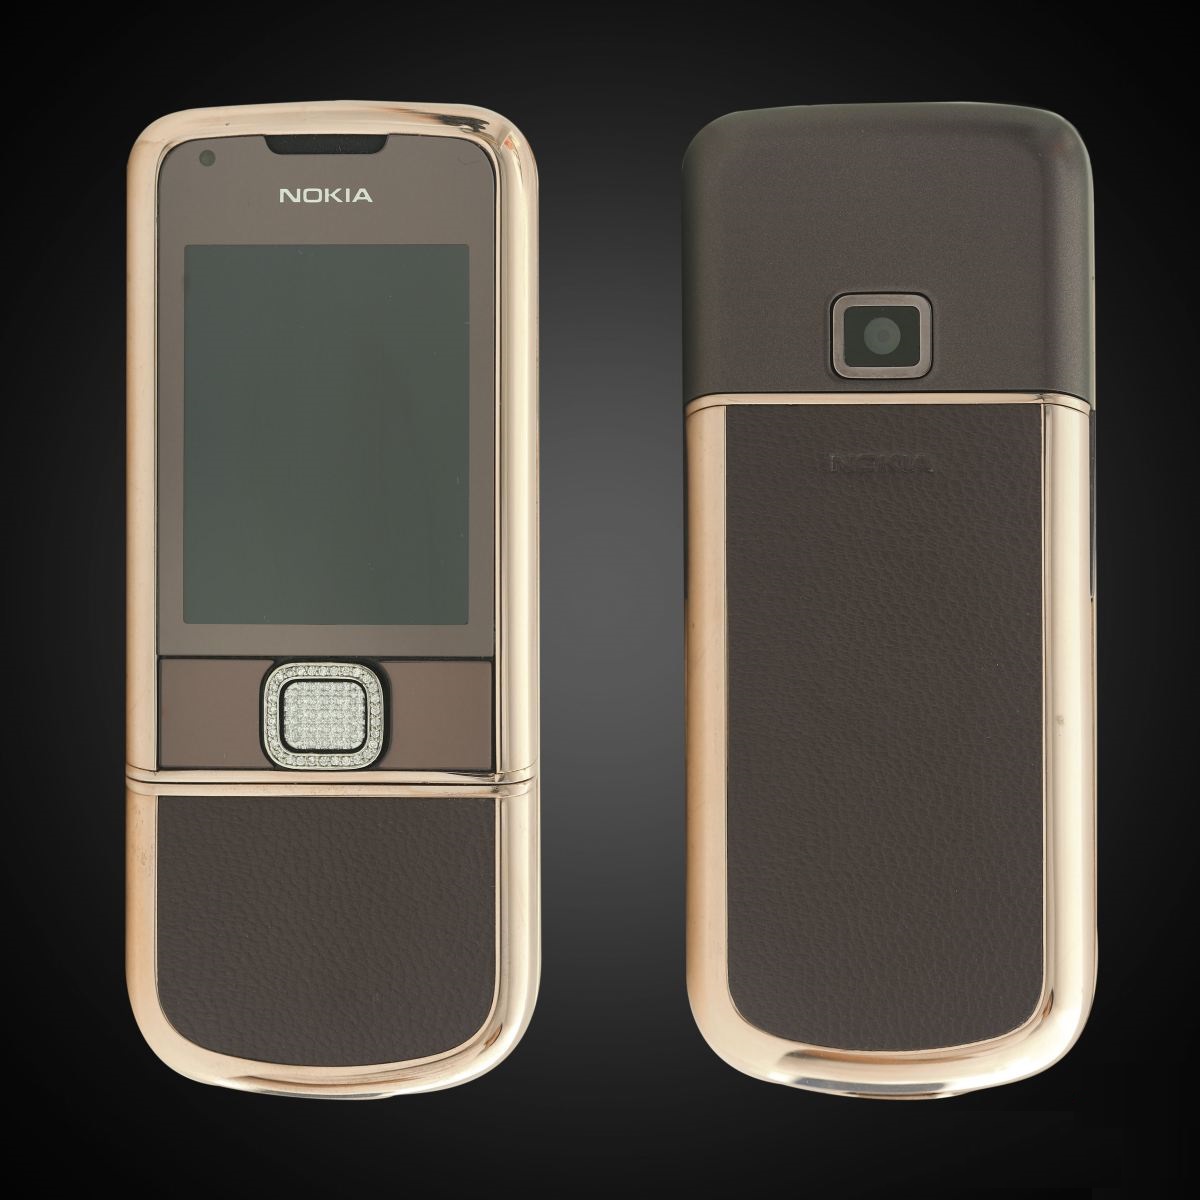 Nokia 8800E Rose Gold đính đá (da nâu) - Với phiên bản Rose Gold đính đá trên chiếc Nokia 8800E, bạn sẽ cảm nhận được sự sang trọng và đẳng cấp của nó. Bên cạnh đó, da nâu cùng với đá tạo điểm nhấn cho sản phẩm thêm nổi bật và thu hút ánh nhìn. Hãy xem ngay hình ảnh để trải nghiệm không gian sang trọng và đẳng cấp của Nokia 8800E Rose Gold đính đá (da nâu).